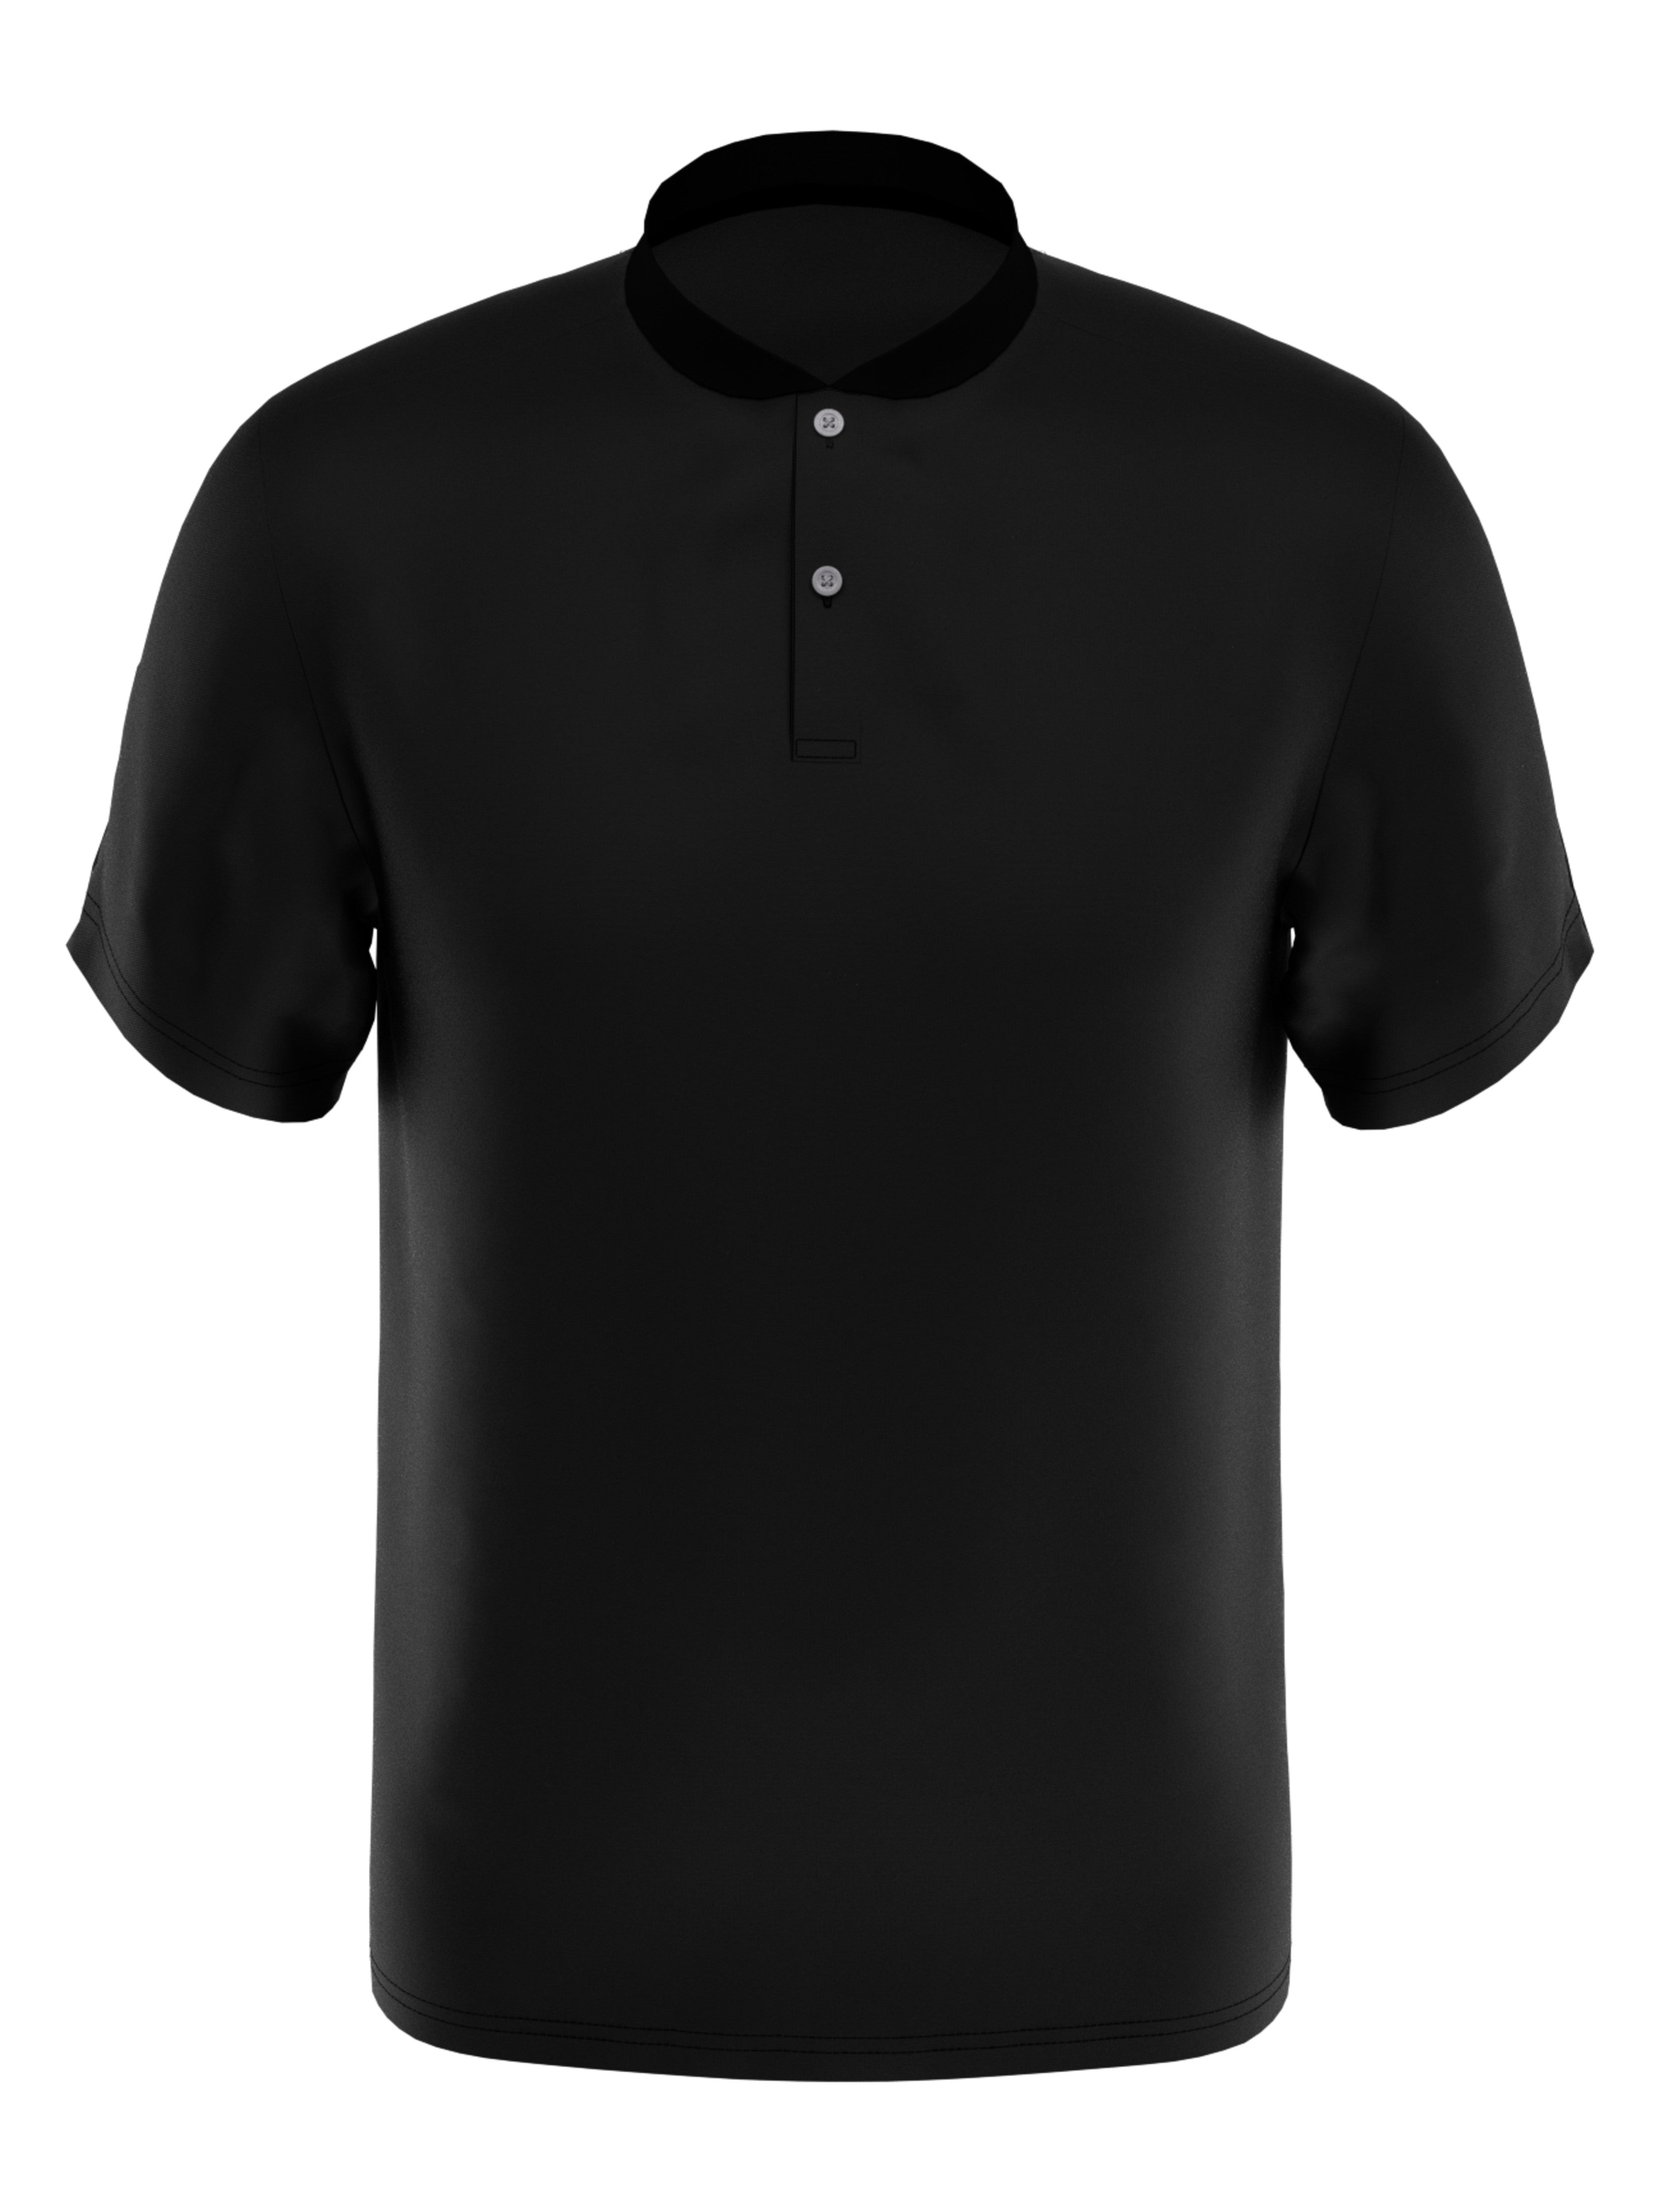 PGA TOUR Apparel Boys Edge Collar Pique Golf Polo Shirt, Size Small, Black, 100% Polyester | Golf Apparel Shop